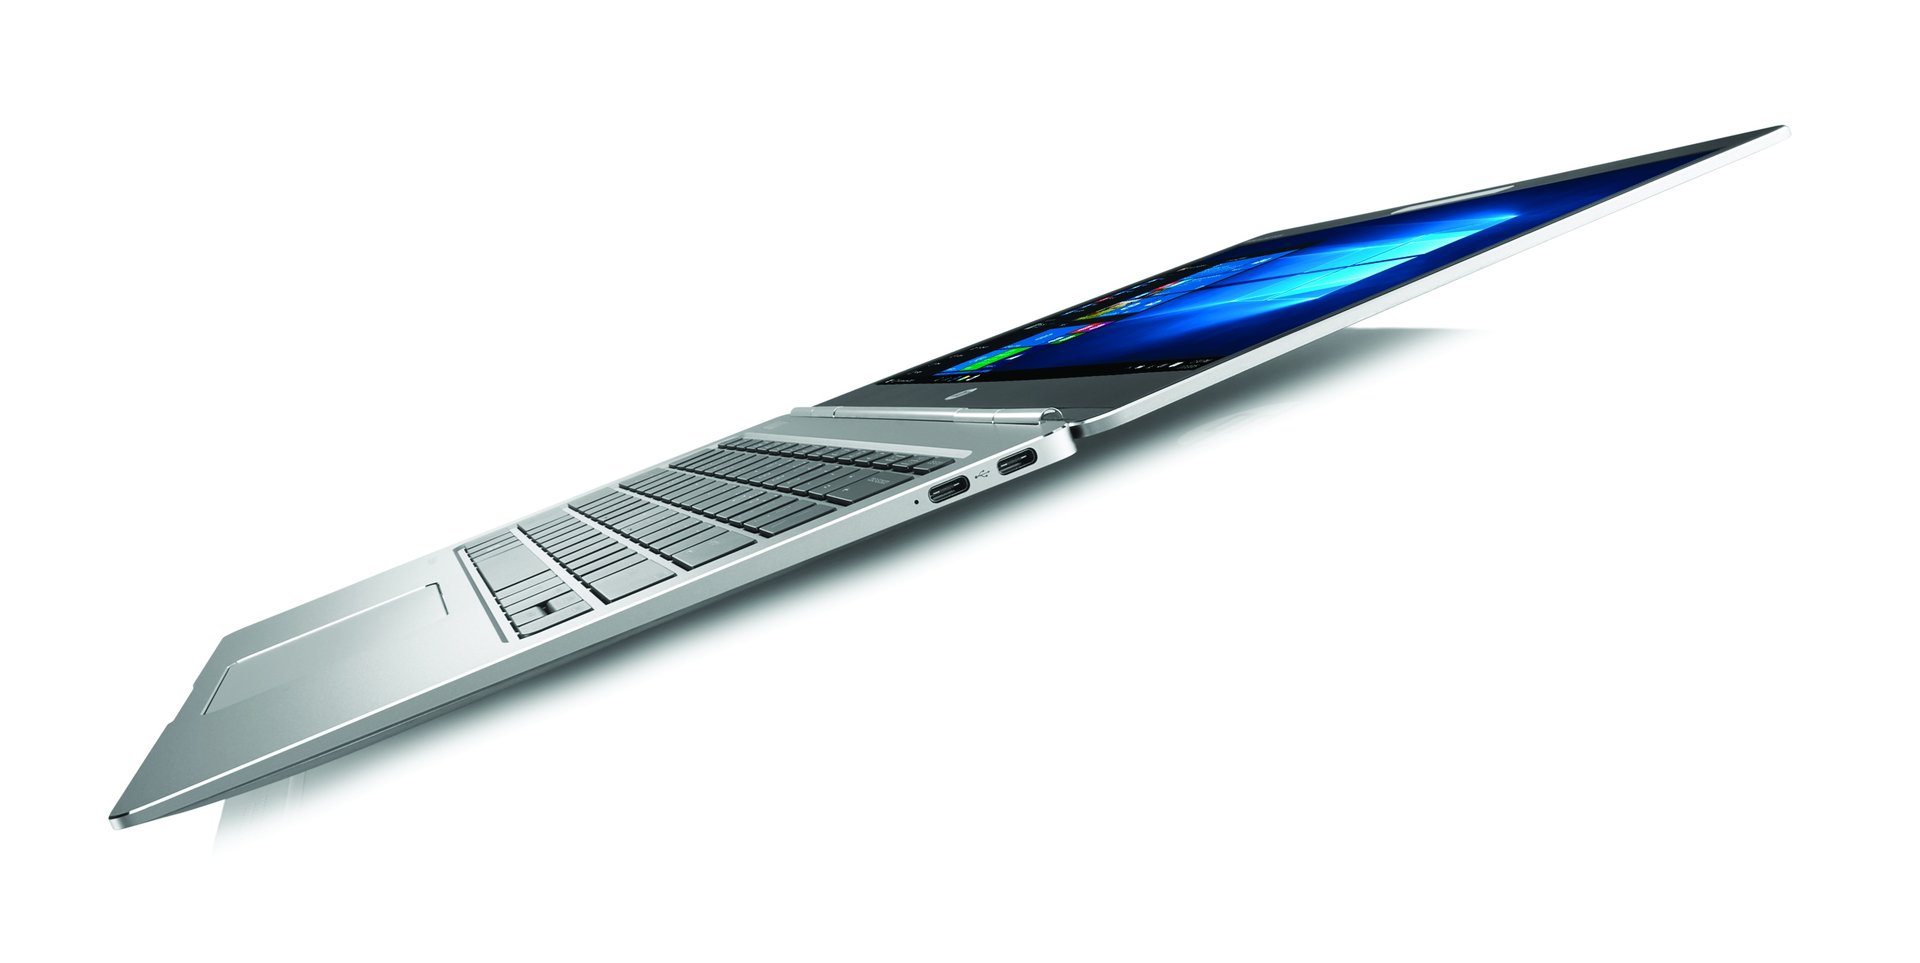 Das neue HP EliteBook Folio G1 mit 12,5 Zoll